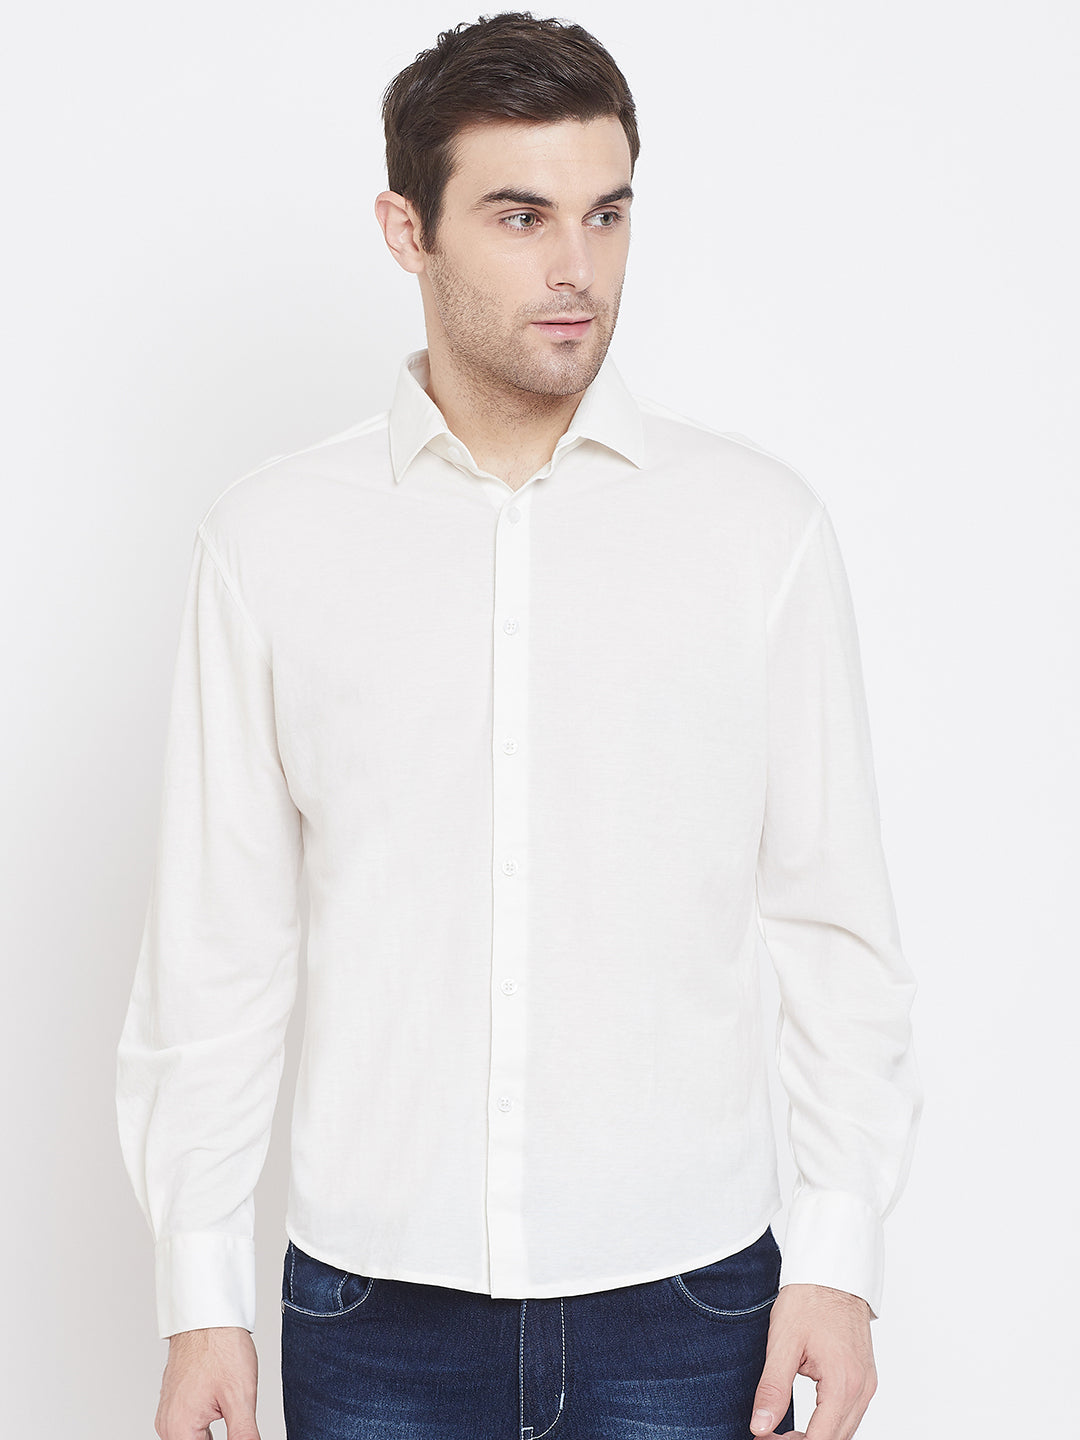 White Formal Shirt - Men Shirts